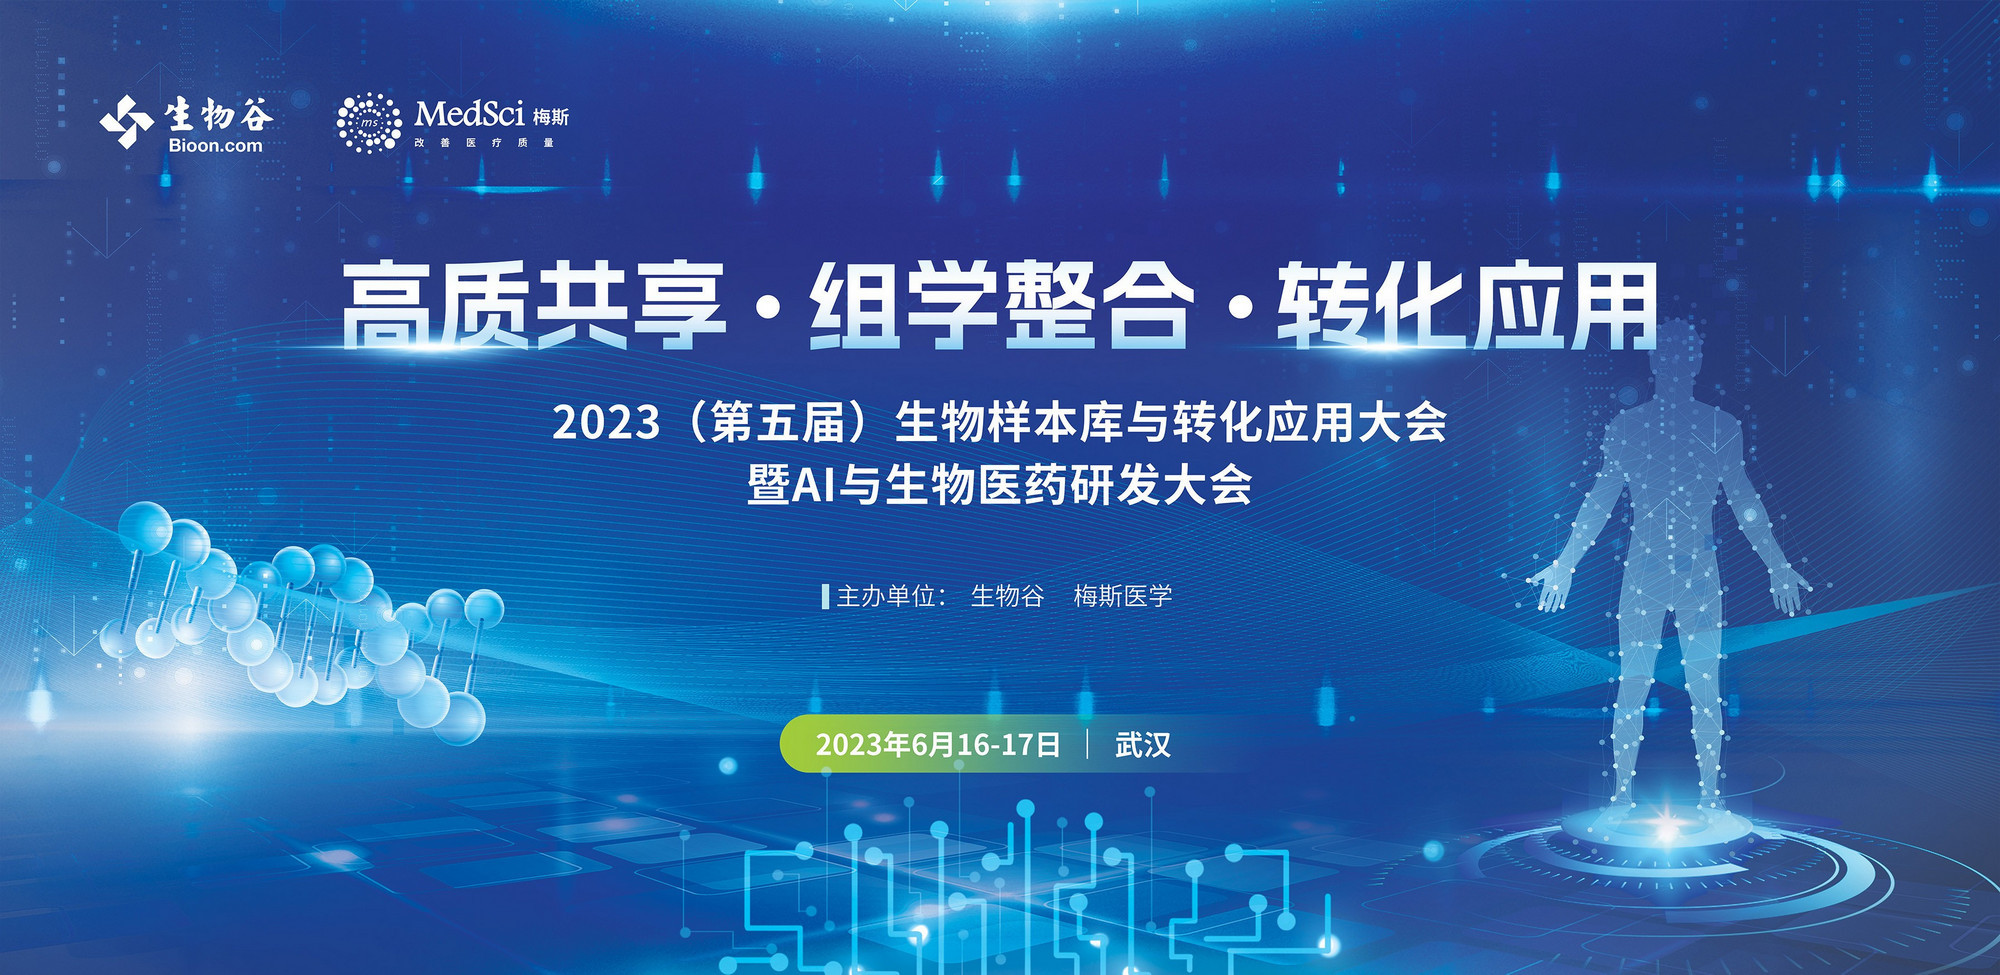 2023（第五屆）生物樣本與轉化應用大會暨AI與生物醫藥研發大會